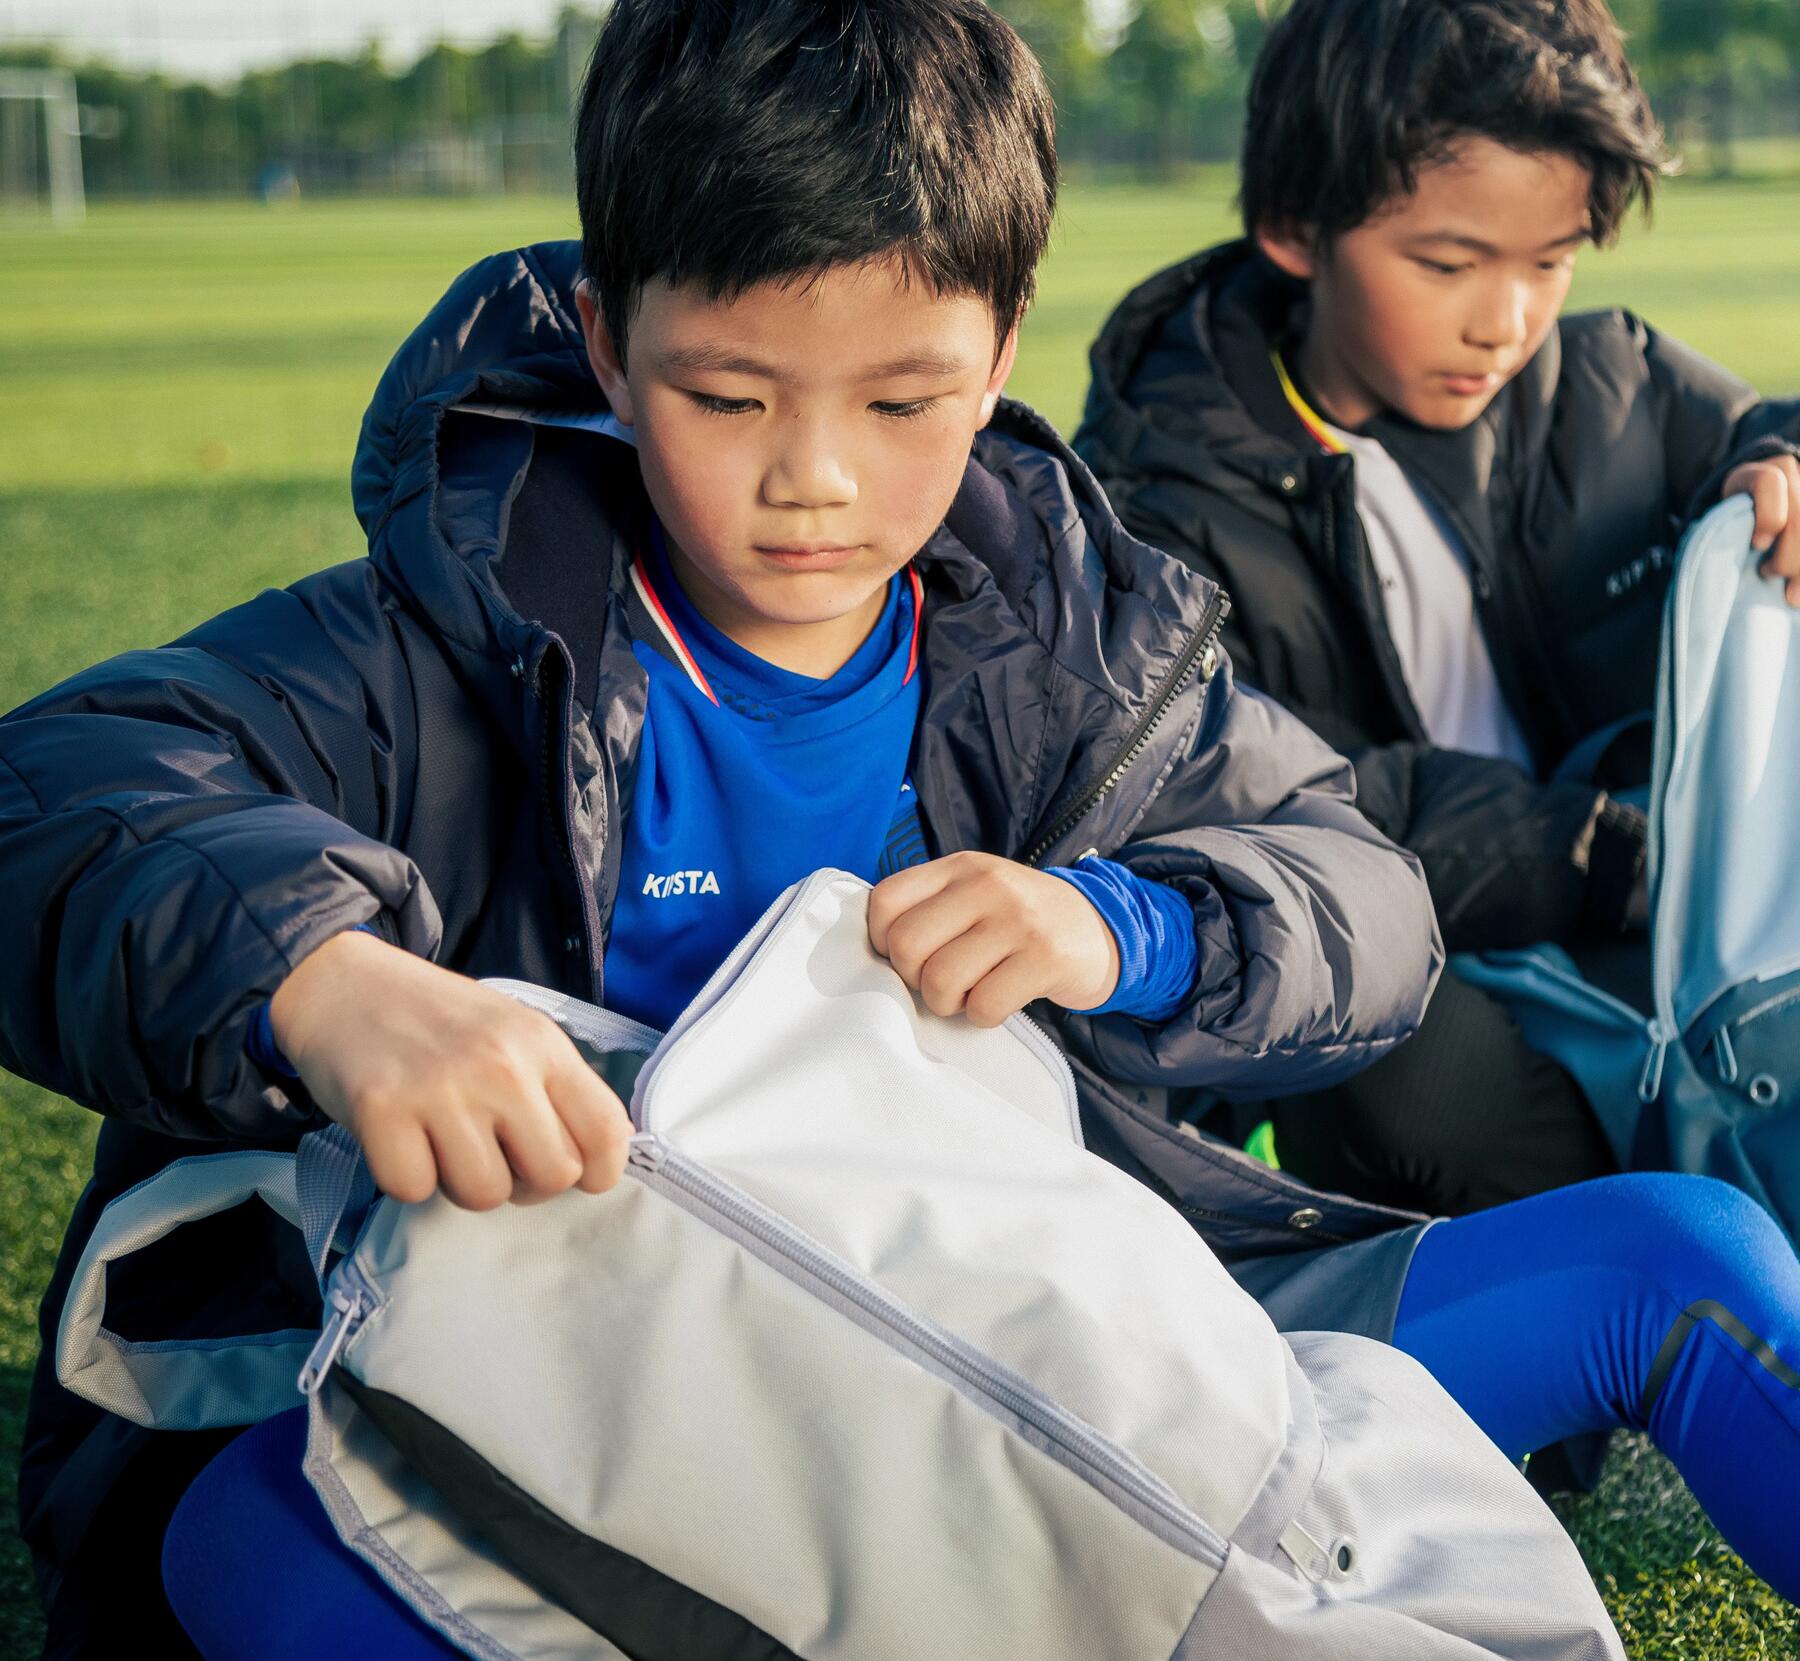 dzieci siedzące na trawie i otwierające plecaki szkolne